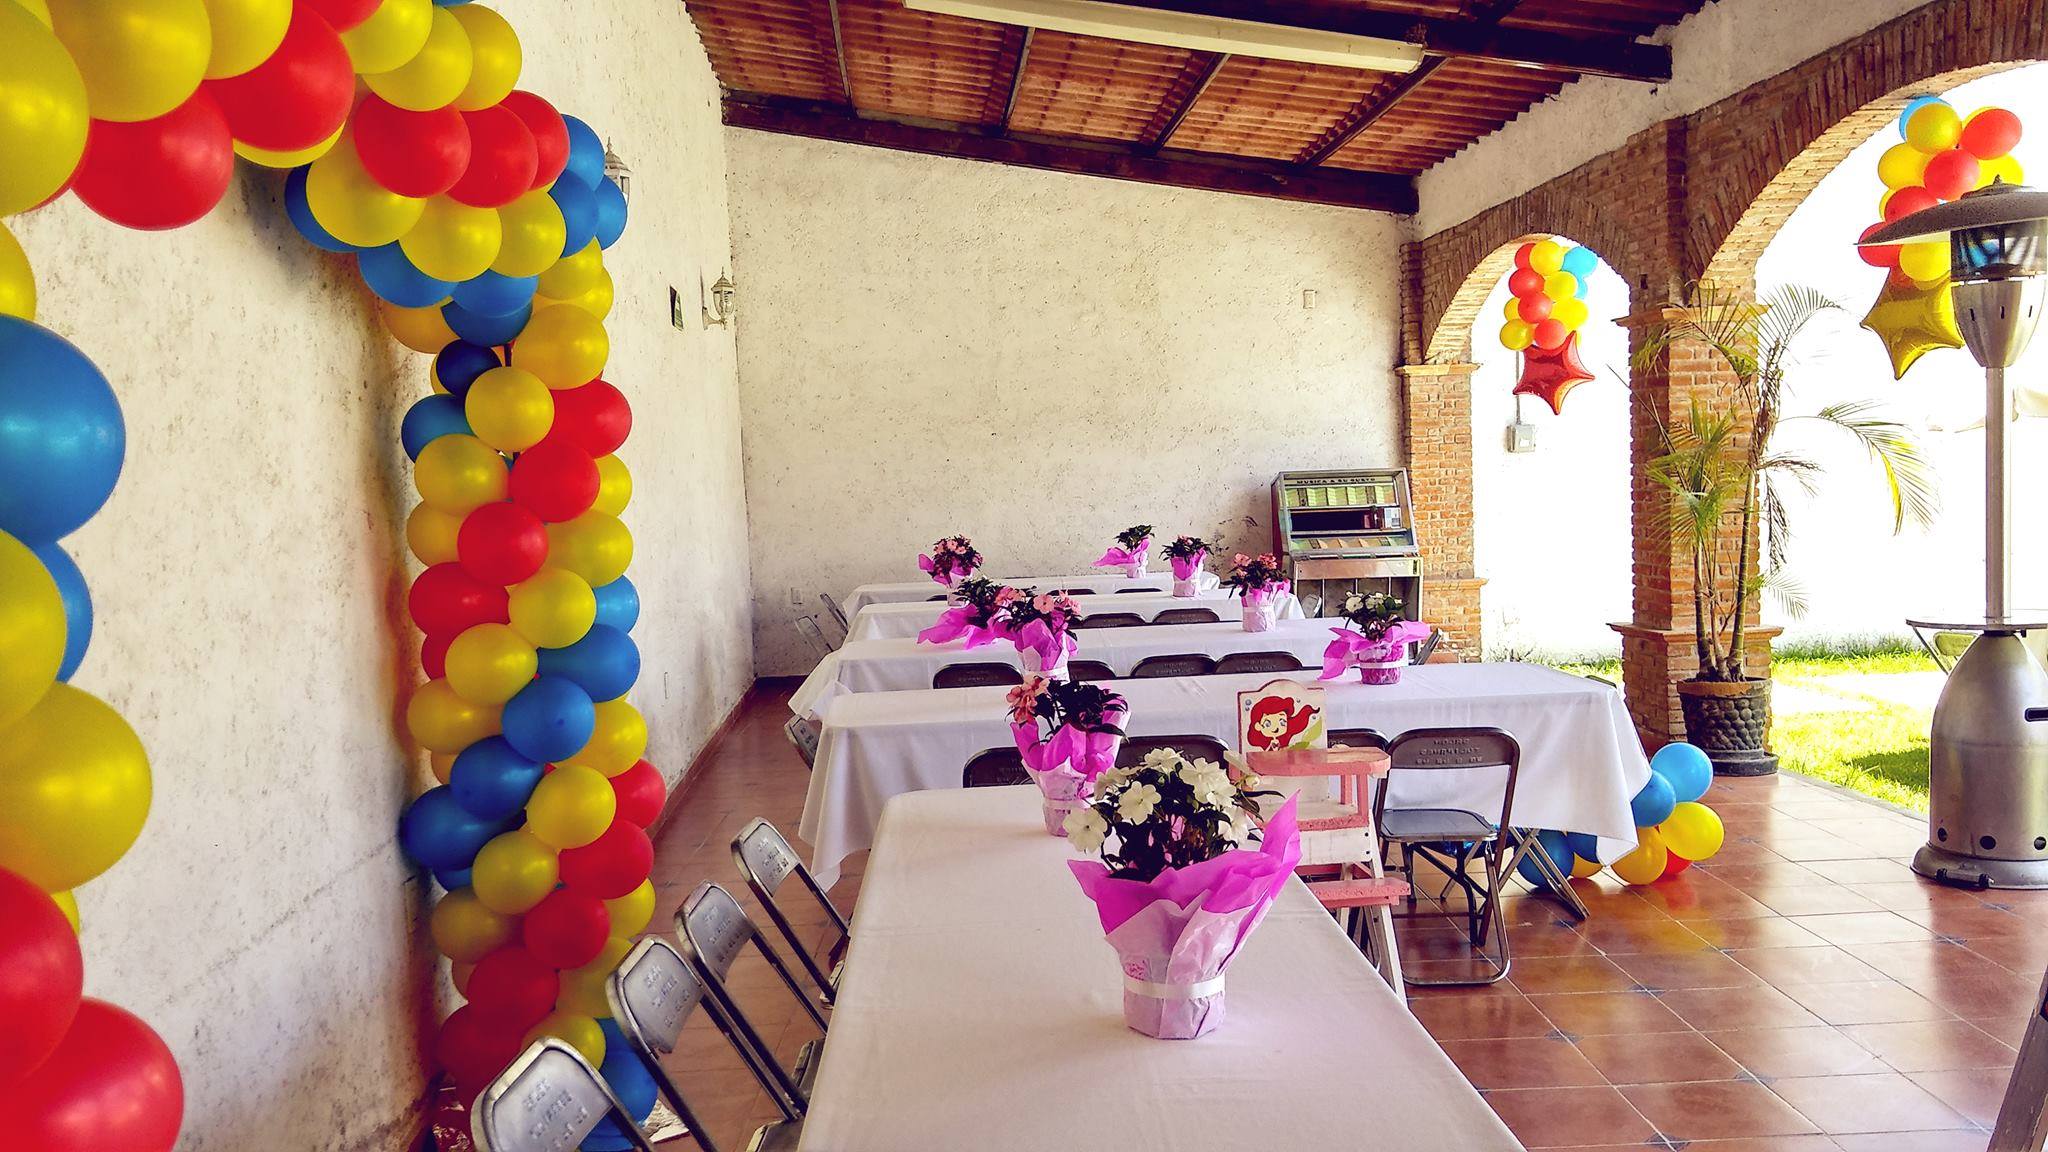 Salones de fiestas en Tehuacán no abrirán por alto costo de prueba Covid